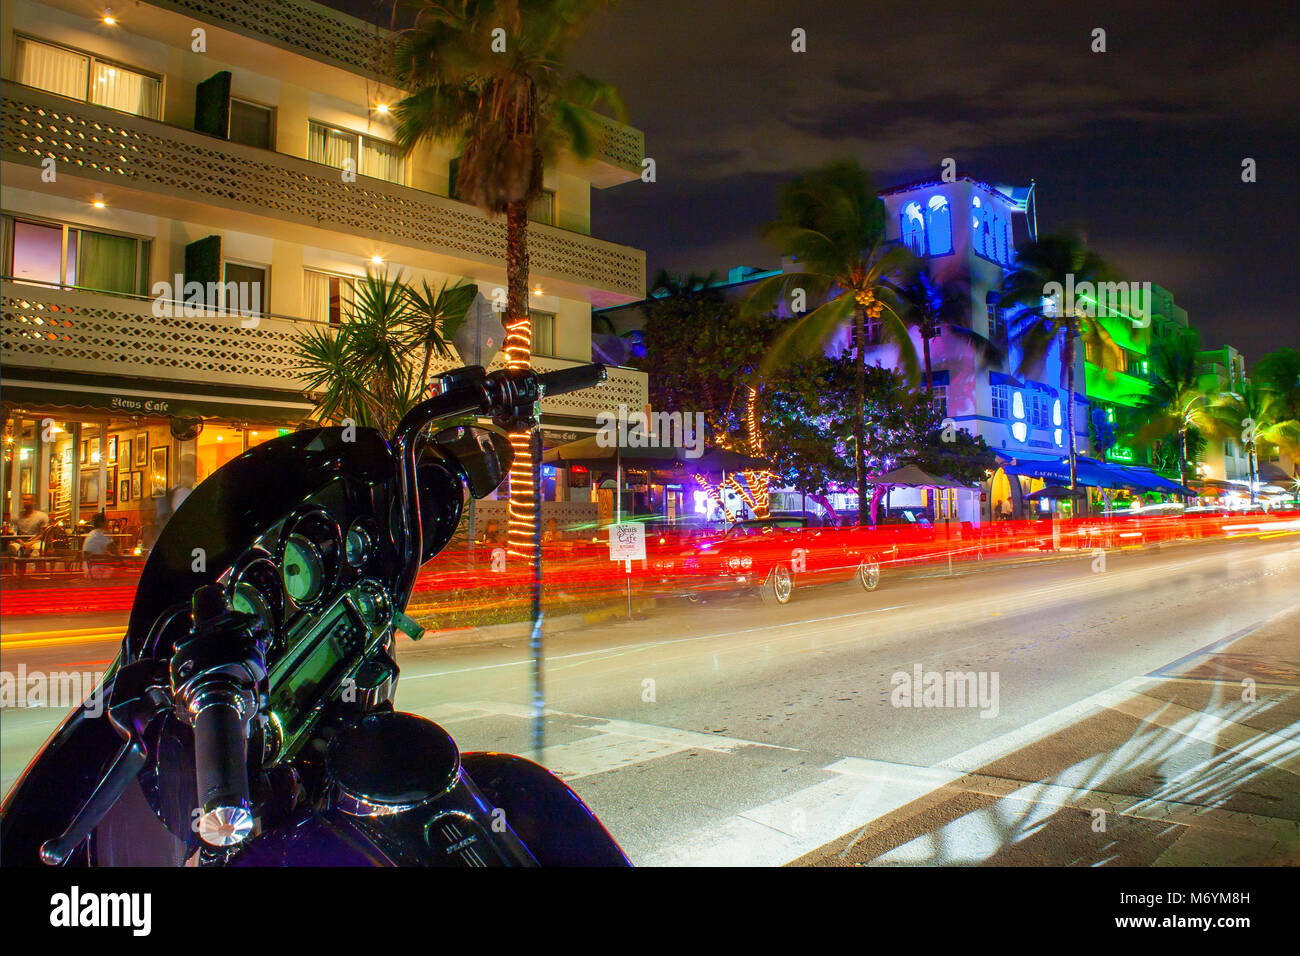 Ocean Drive in Miami in der Nacht mit lebhaften Straße Farben. Autos vorbei durch Erstellen von Linien aus Licht während der langen Belichtungszeit. Fahrrad im Vordergrund. Stockfoto